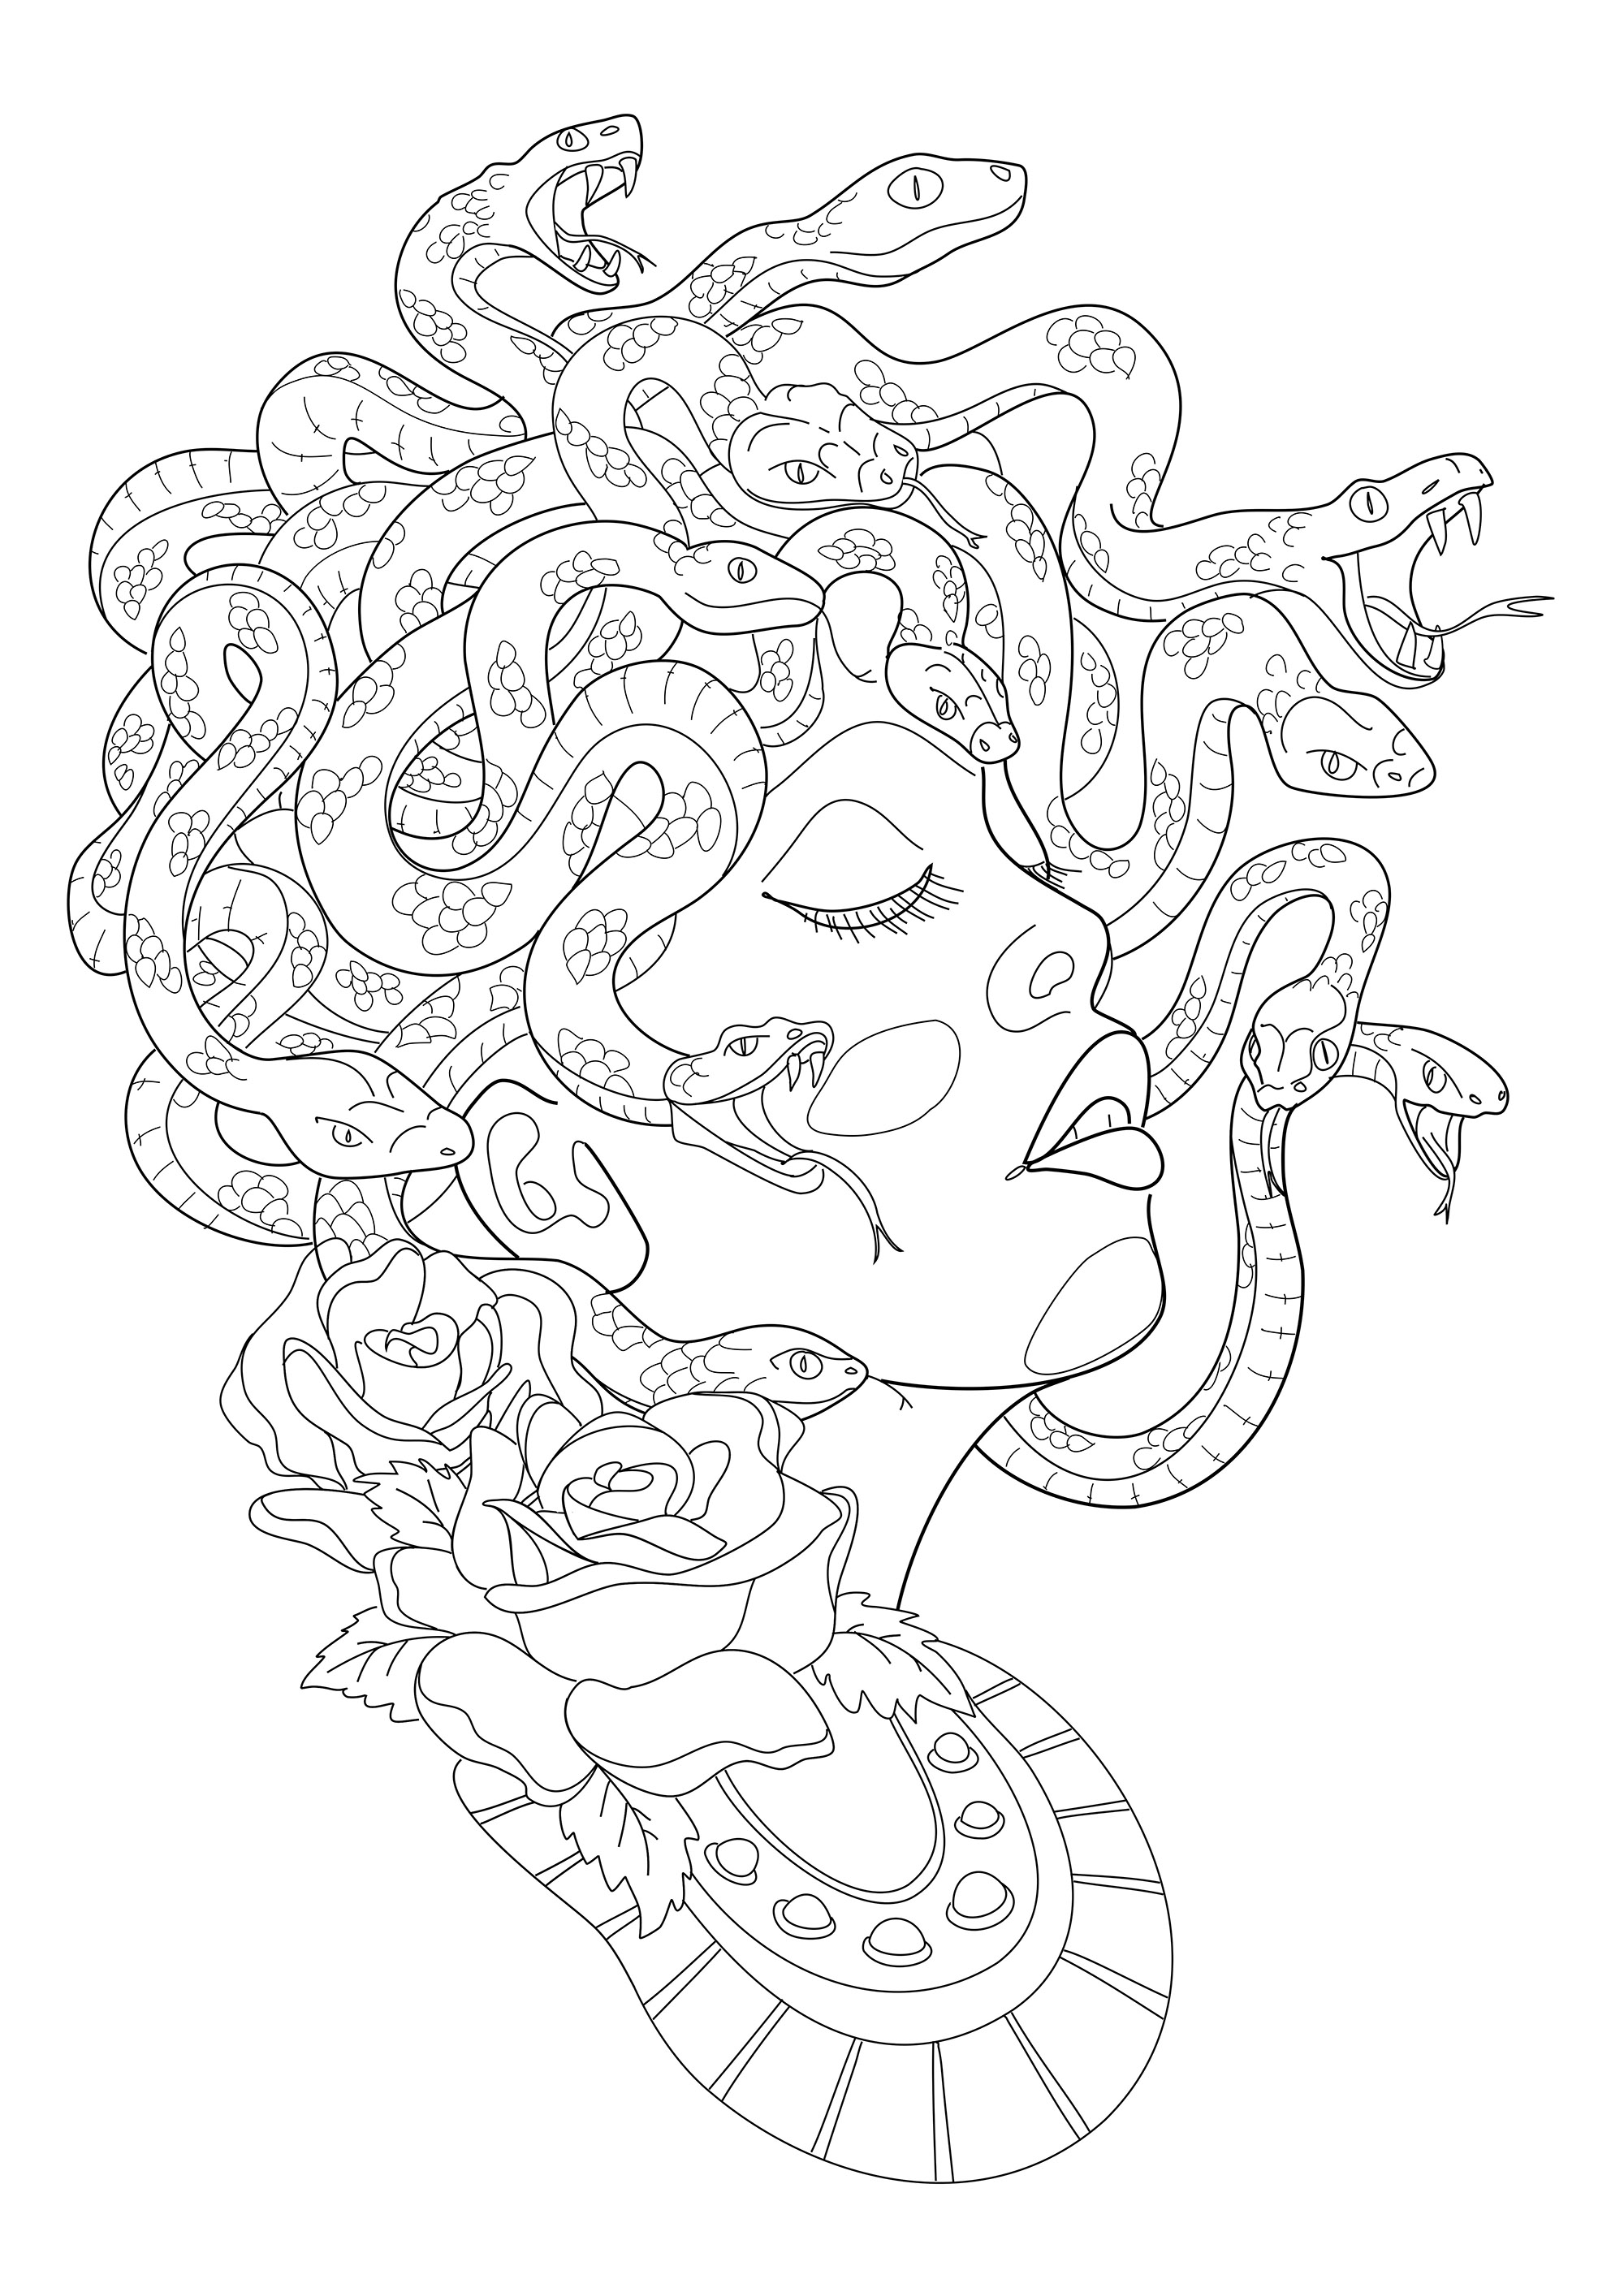 Medusa im Profil, mit ihren furchterregenden Schlangen im Haar. Auszug aus 'Realistic Tattoos Coloring Book' von Roberto 'Gi, Künstler : Roberto Gemori